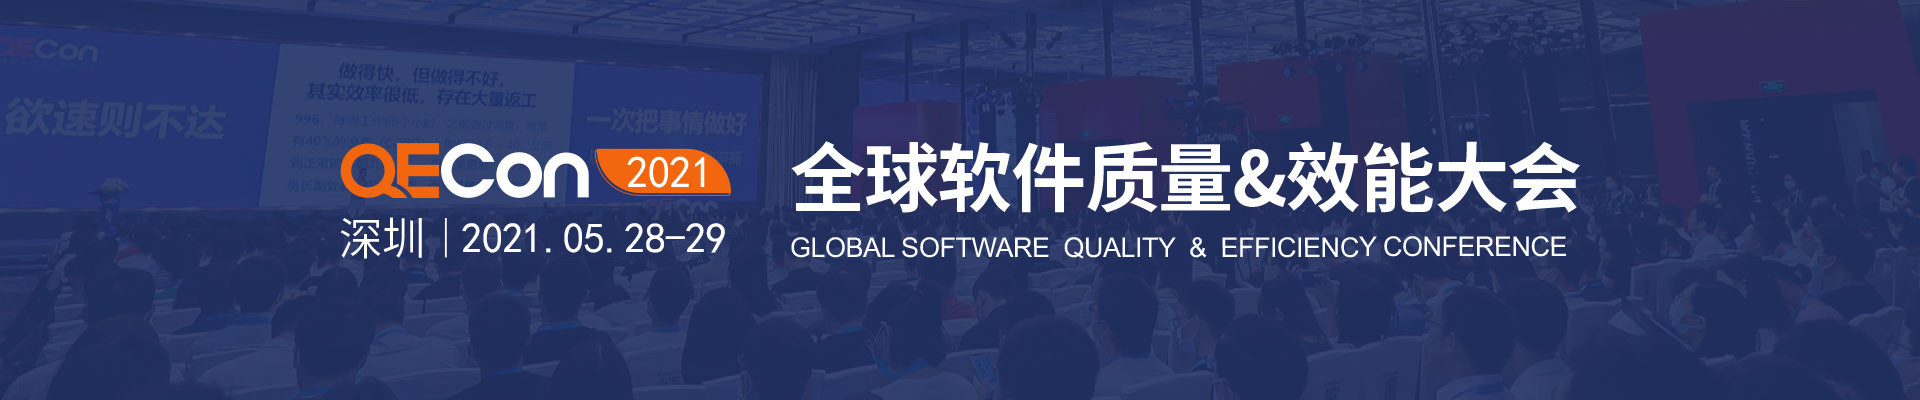 2021QECon全球软件质量&效能大会·深圳